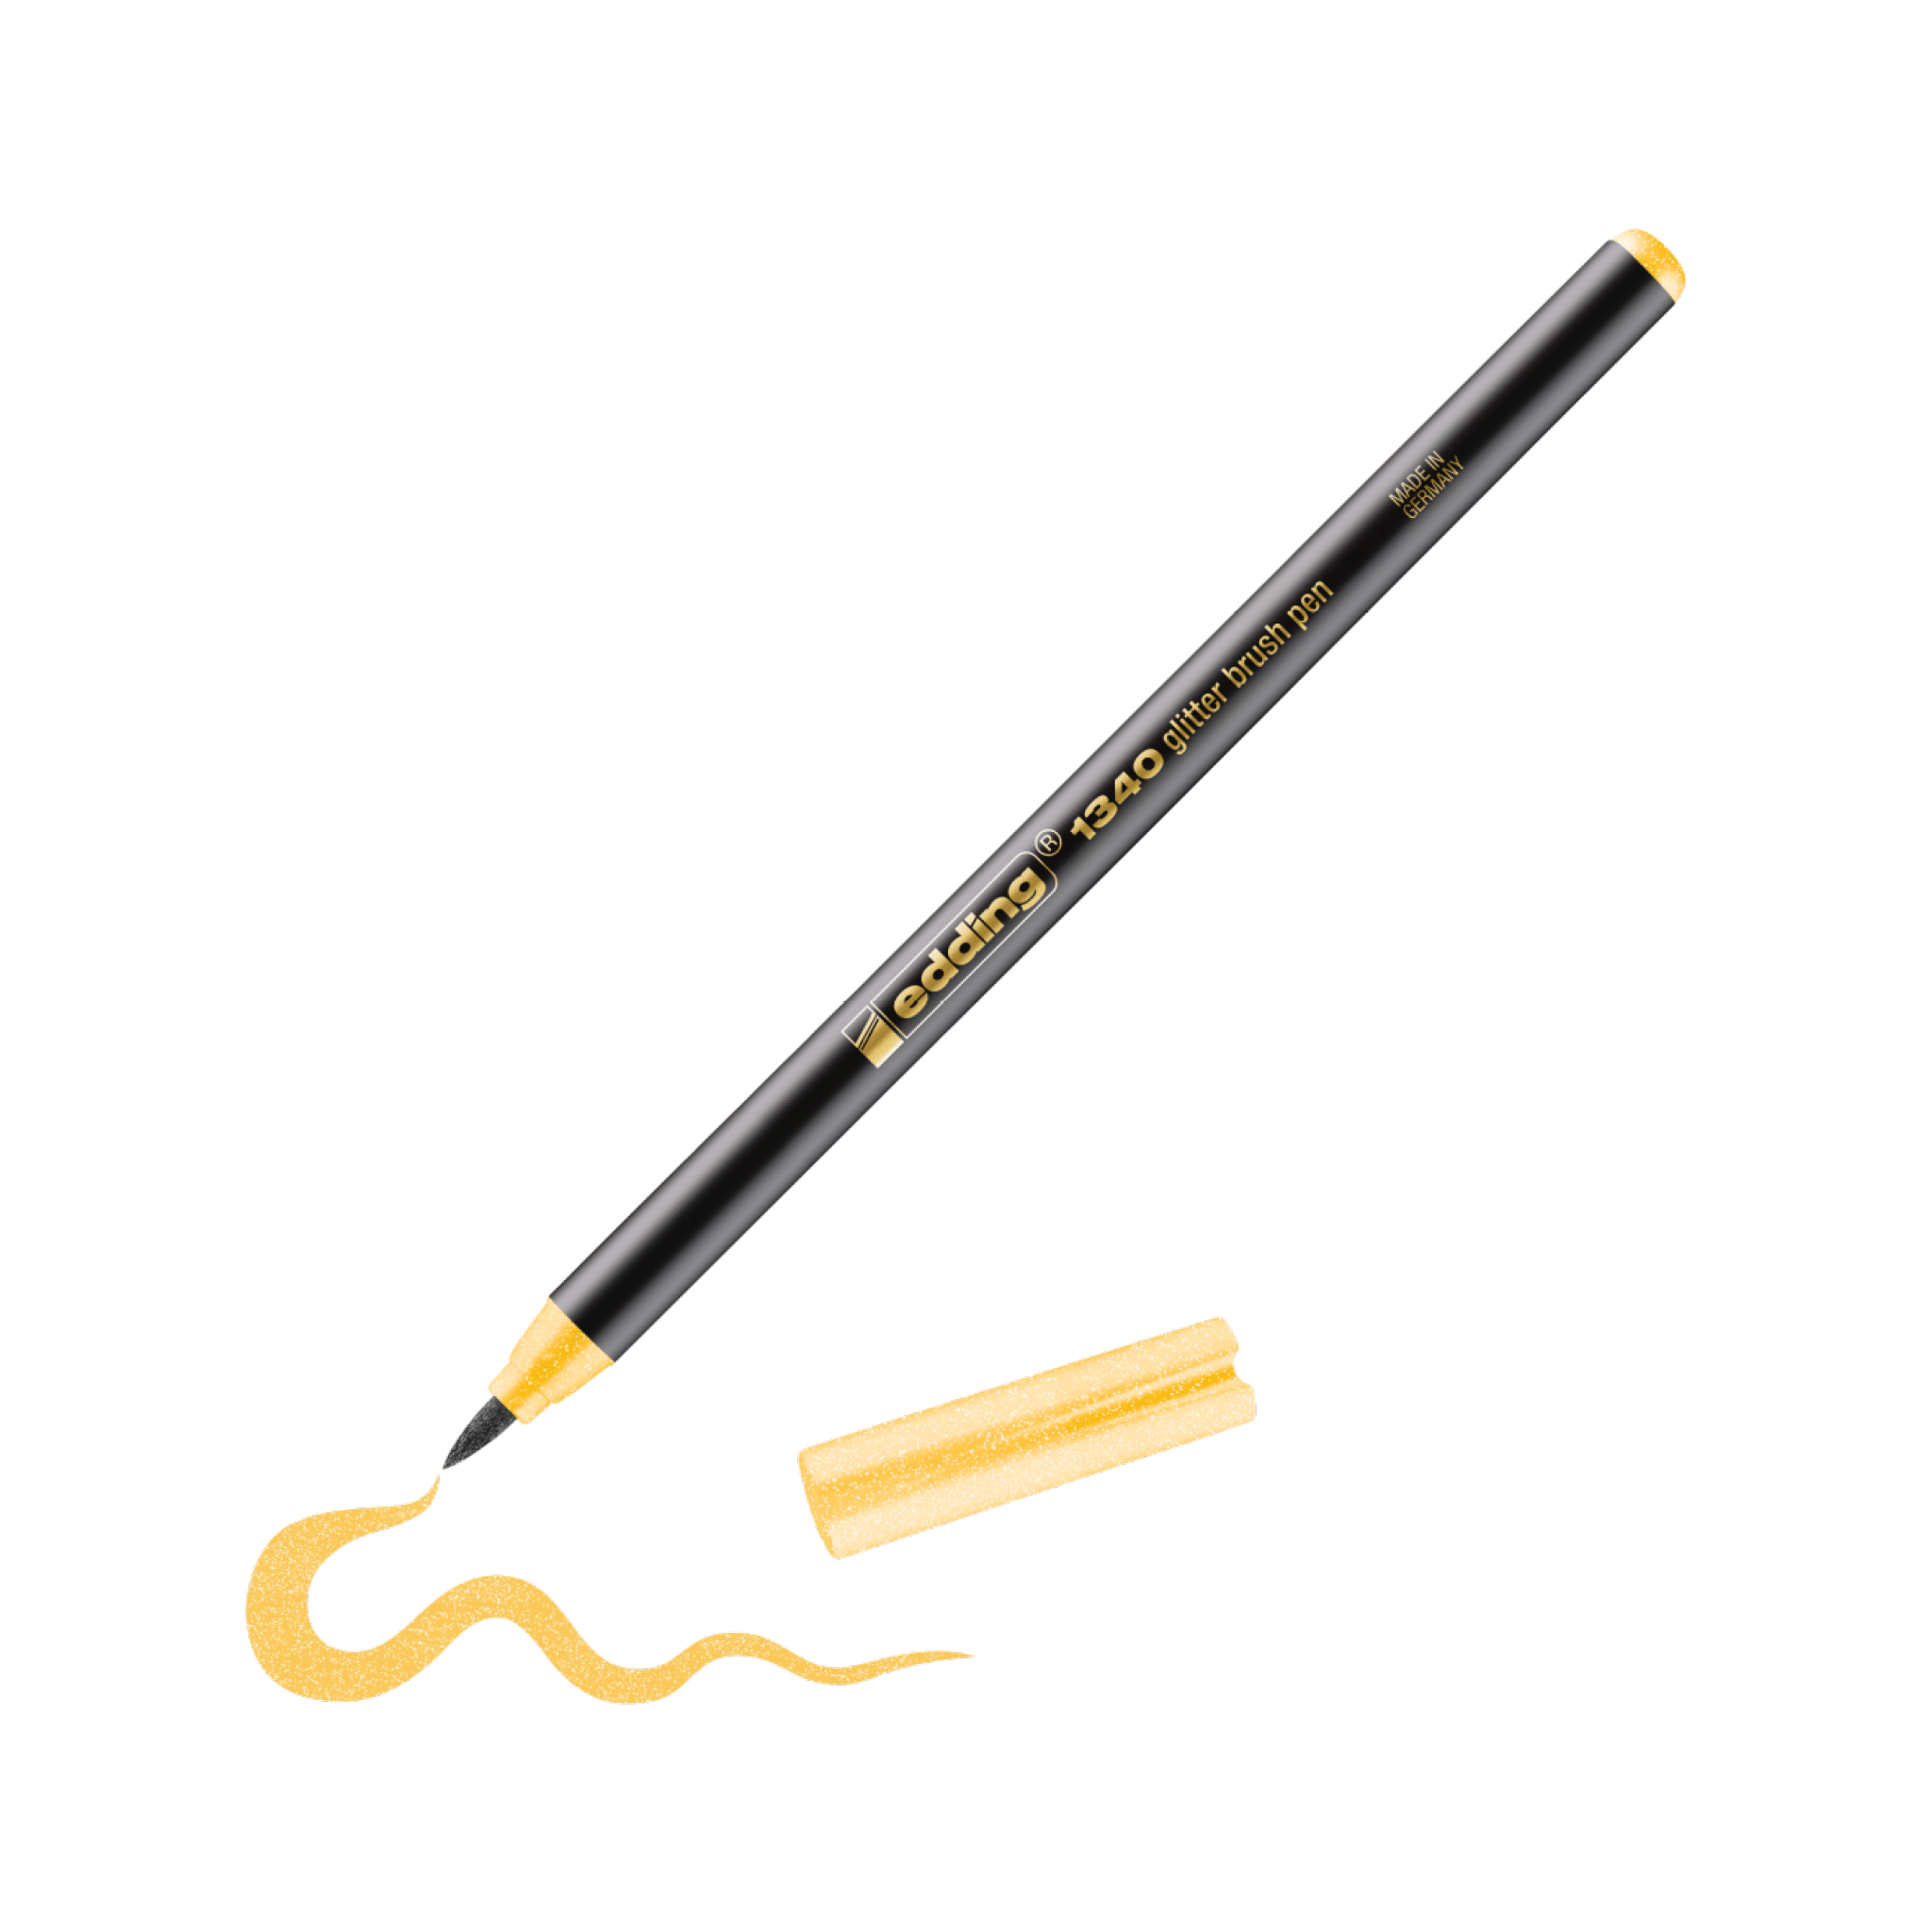 Ein schwarz-goldfarbener edding 1340 Glitzer-Pinselstift zeichnet eine wellenförmige gelbe Linie auf einen weißen Hintergrund, mit einer kleinen abgebrochenen Spitze daneben, perfekt.